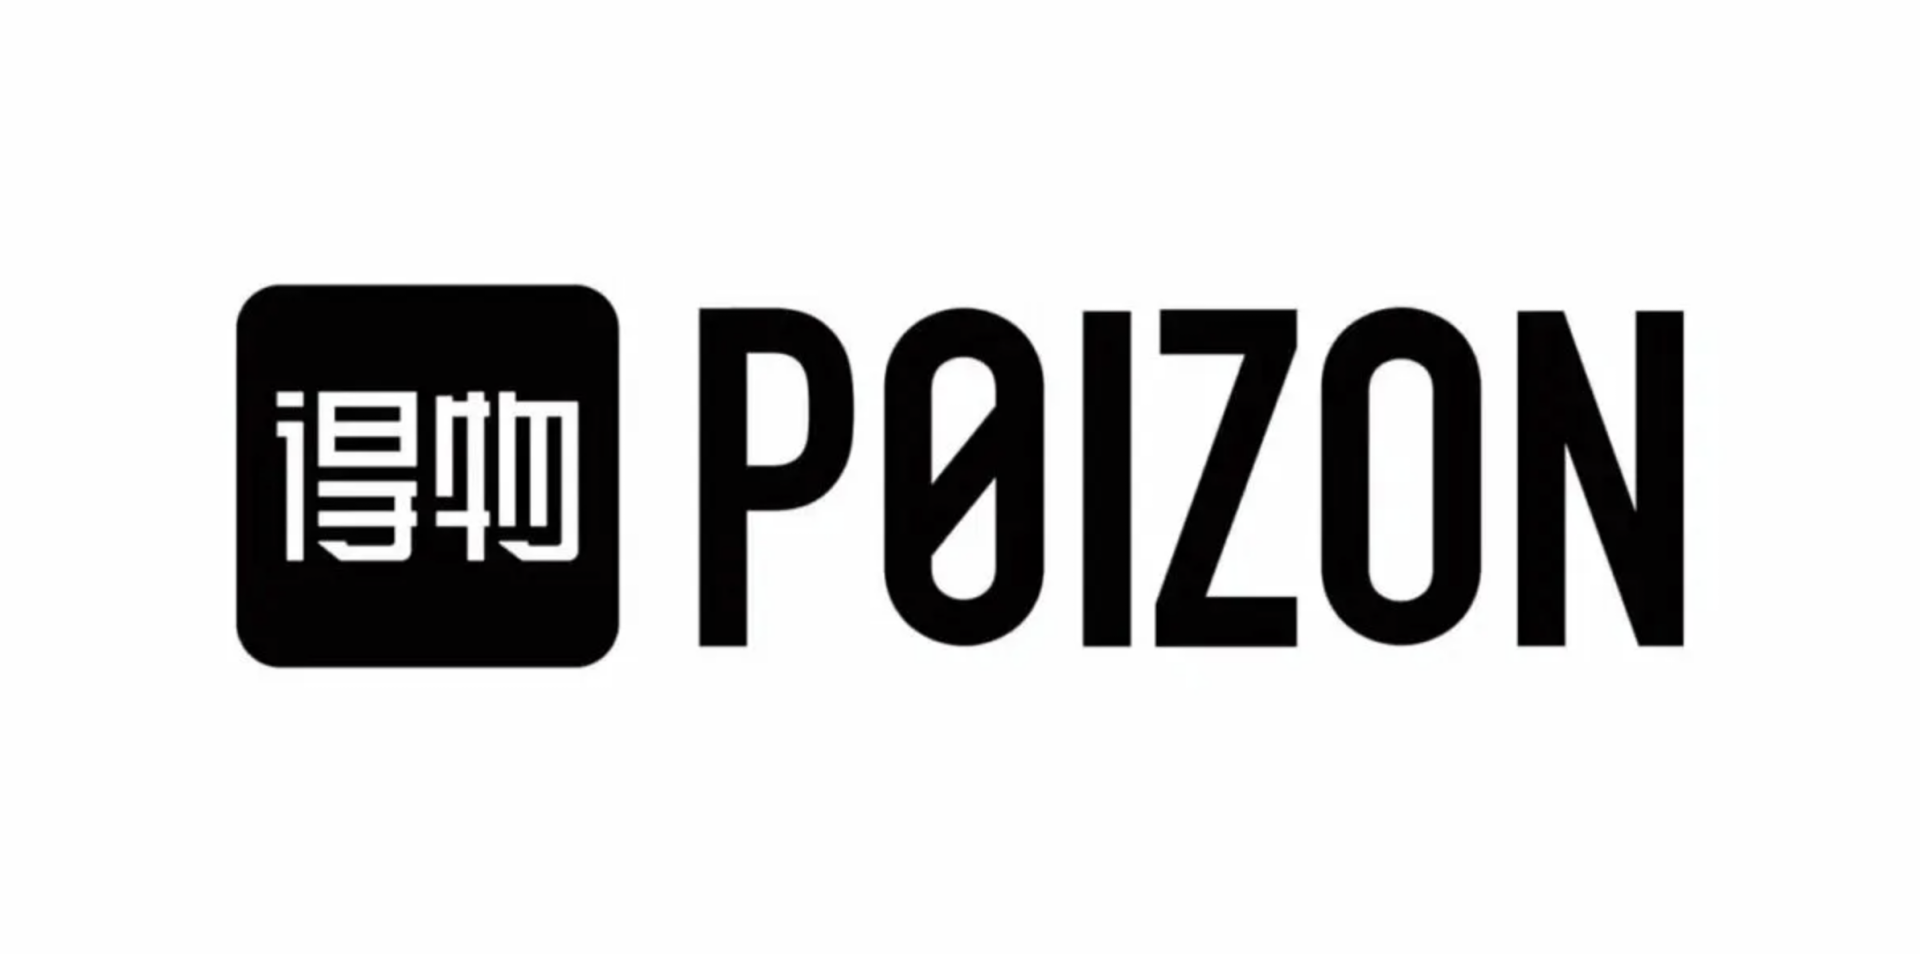 Poizon